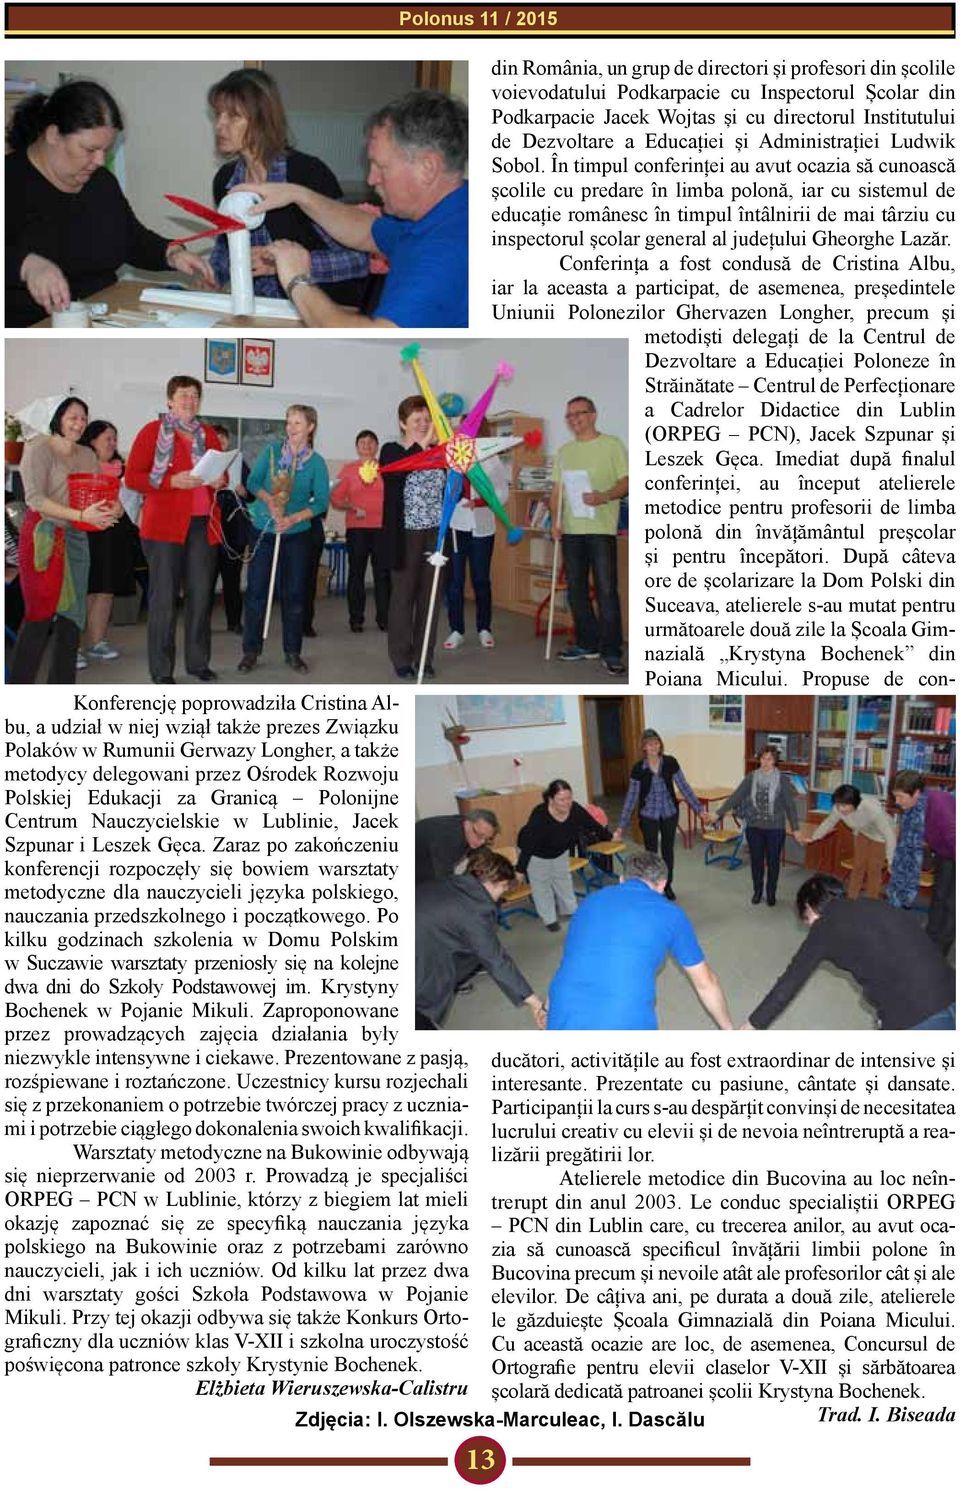 Zaraz po zakończeniu konferencji rozpoczęły się bowiem warsztaty metodyczne dla nauczycieli języka polskiego, nauczania przedszkolnego i początkowego.